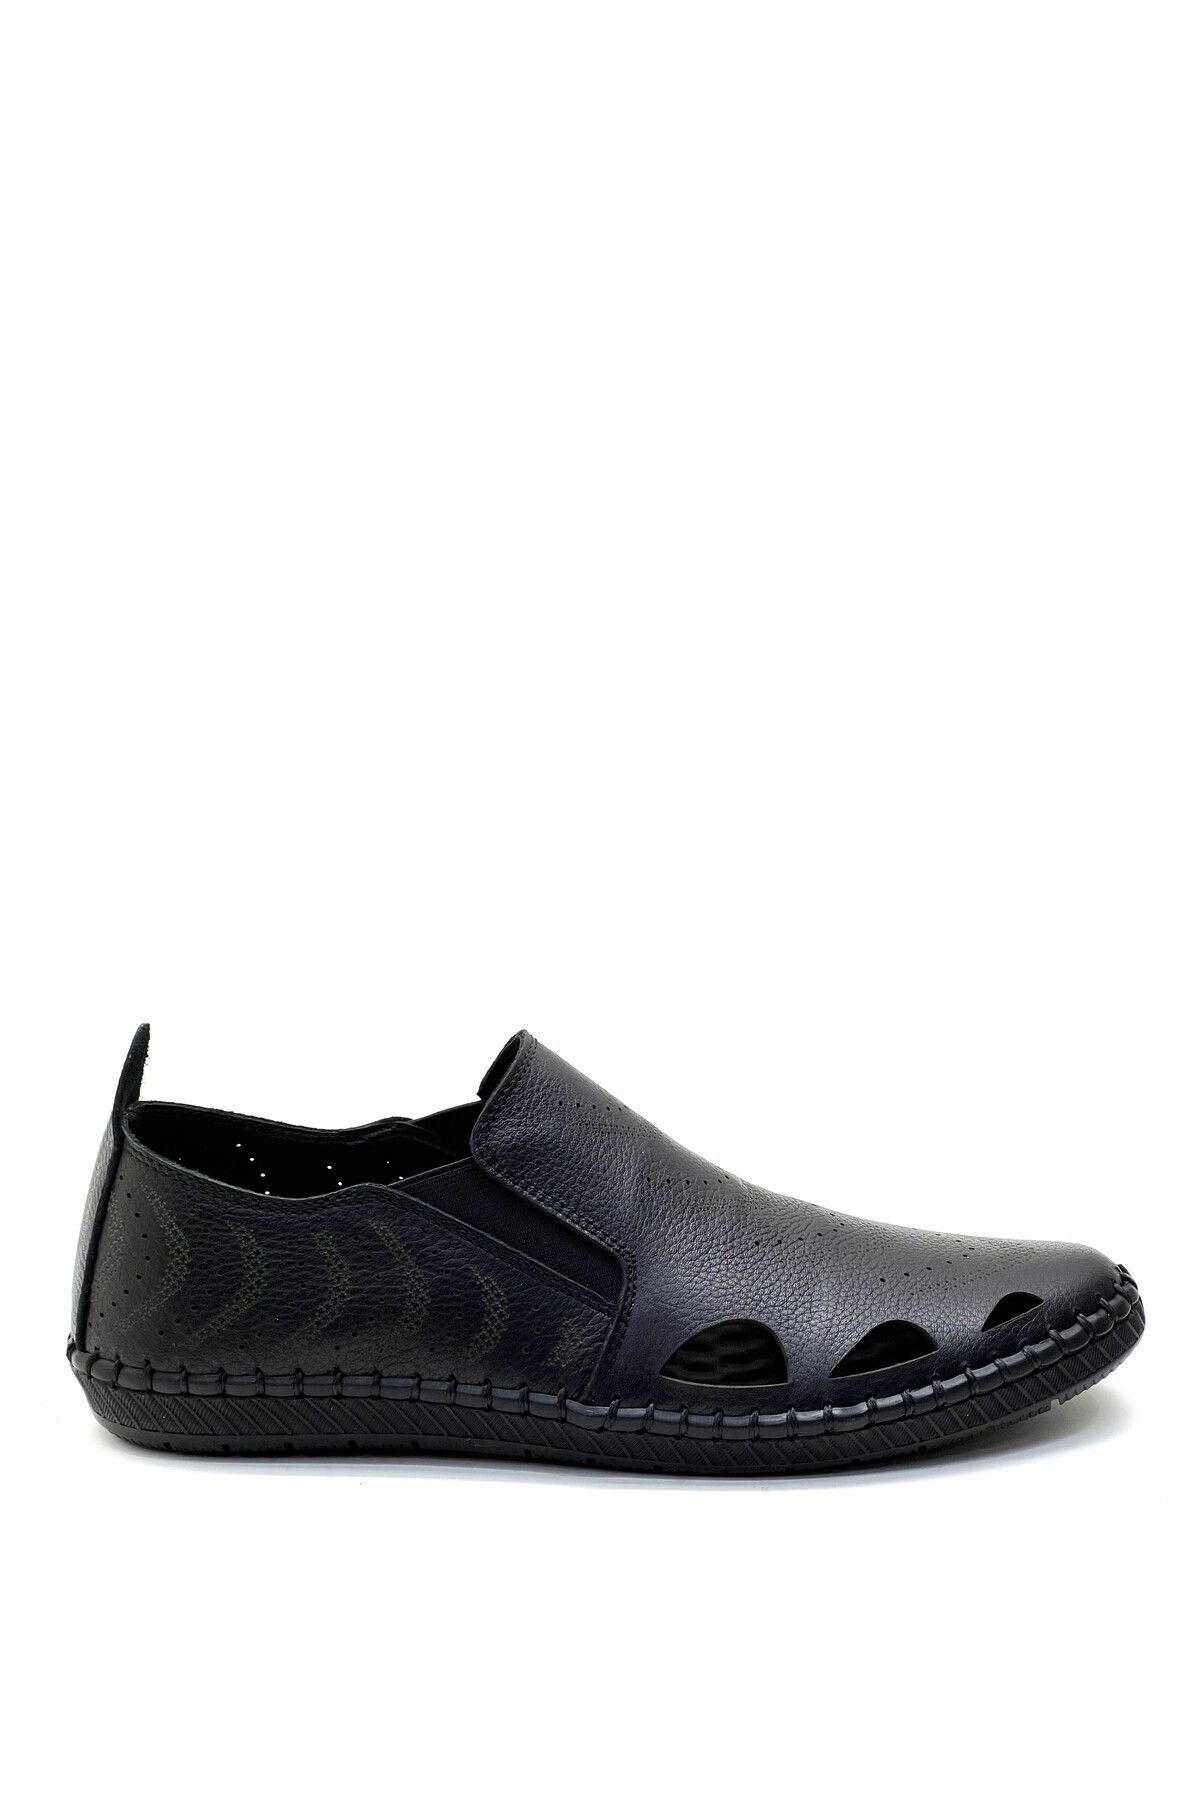 grado Hakiki Deri Erkek Yazlık Delikli Ayakkabı Siyah Renk 1000-17